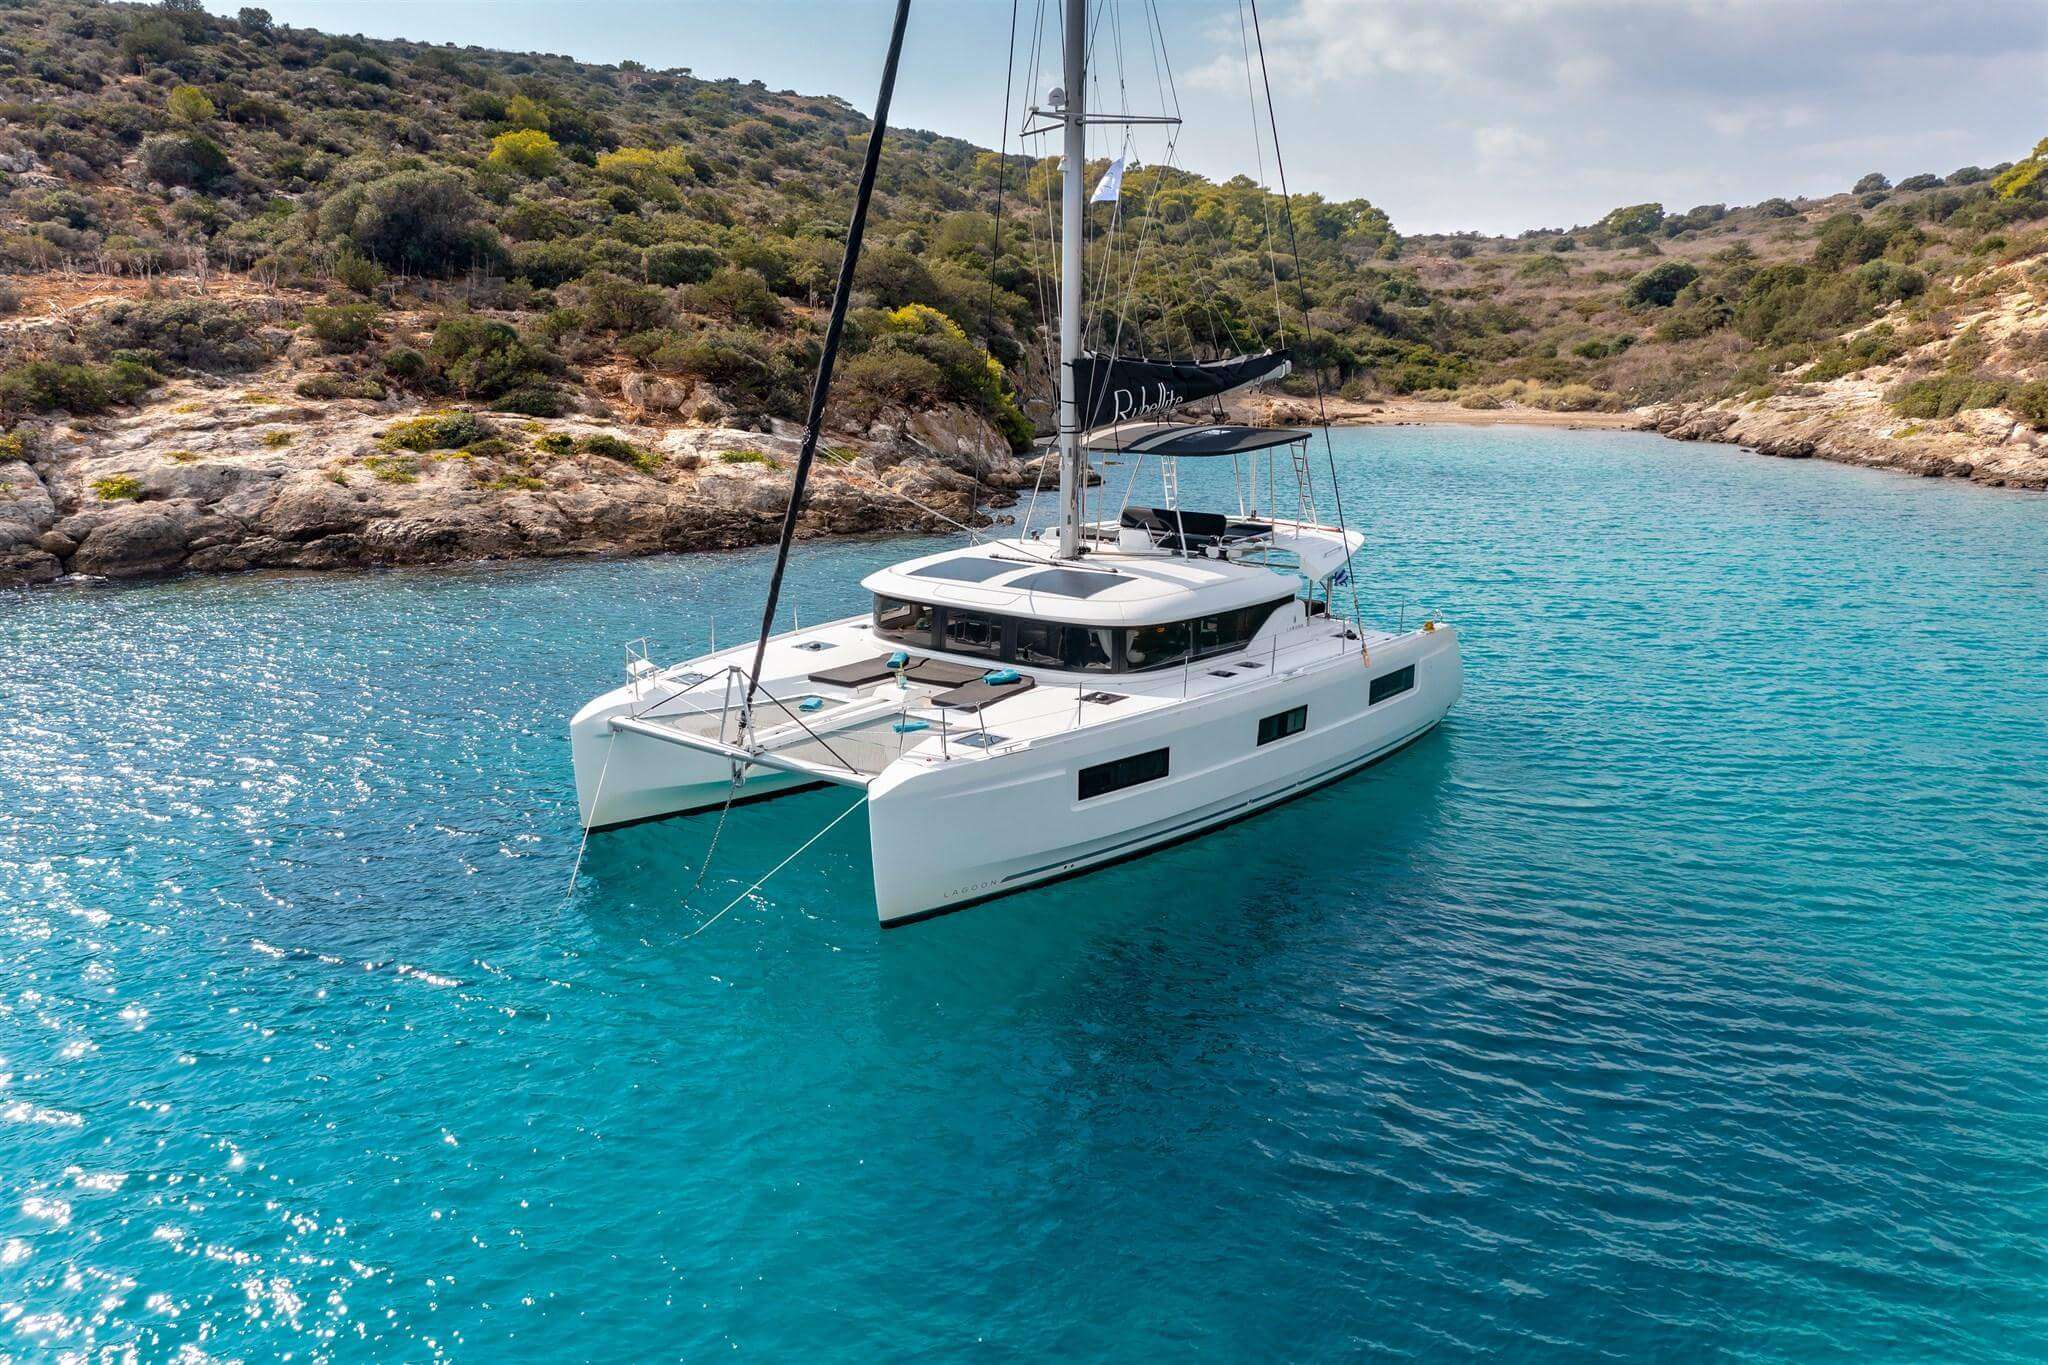 PEPE - Yacht Charter Rijeka & Boat hire in Croatia 1